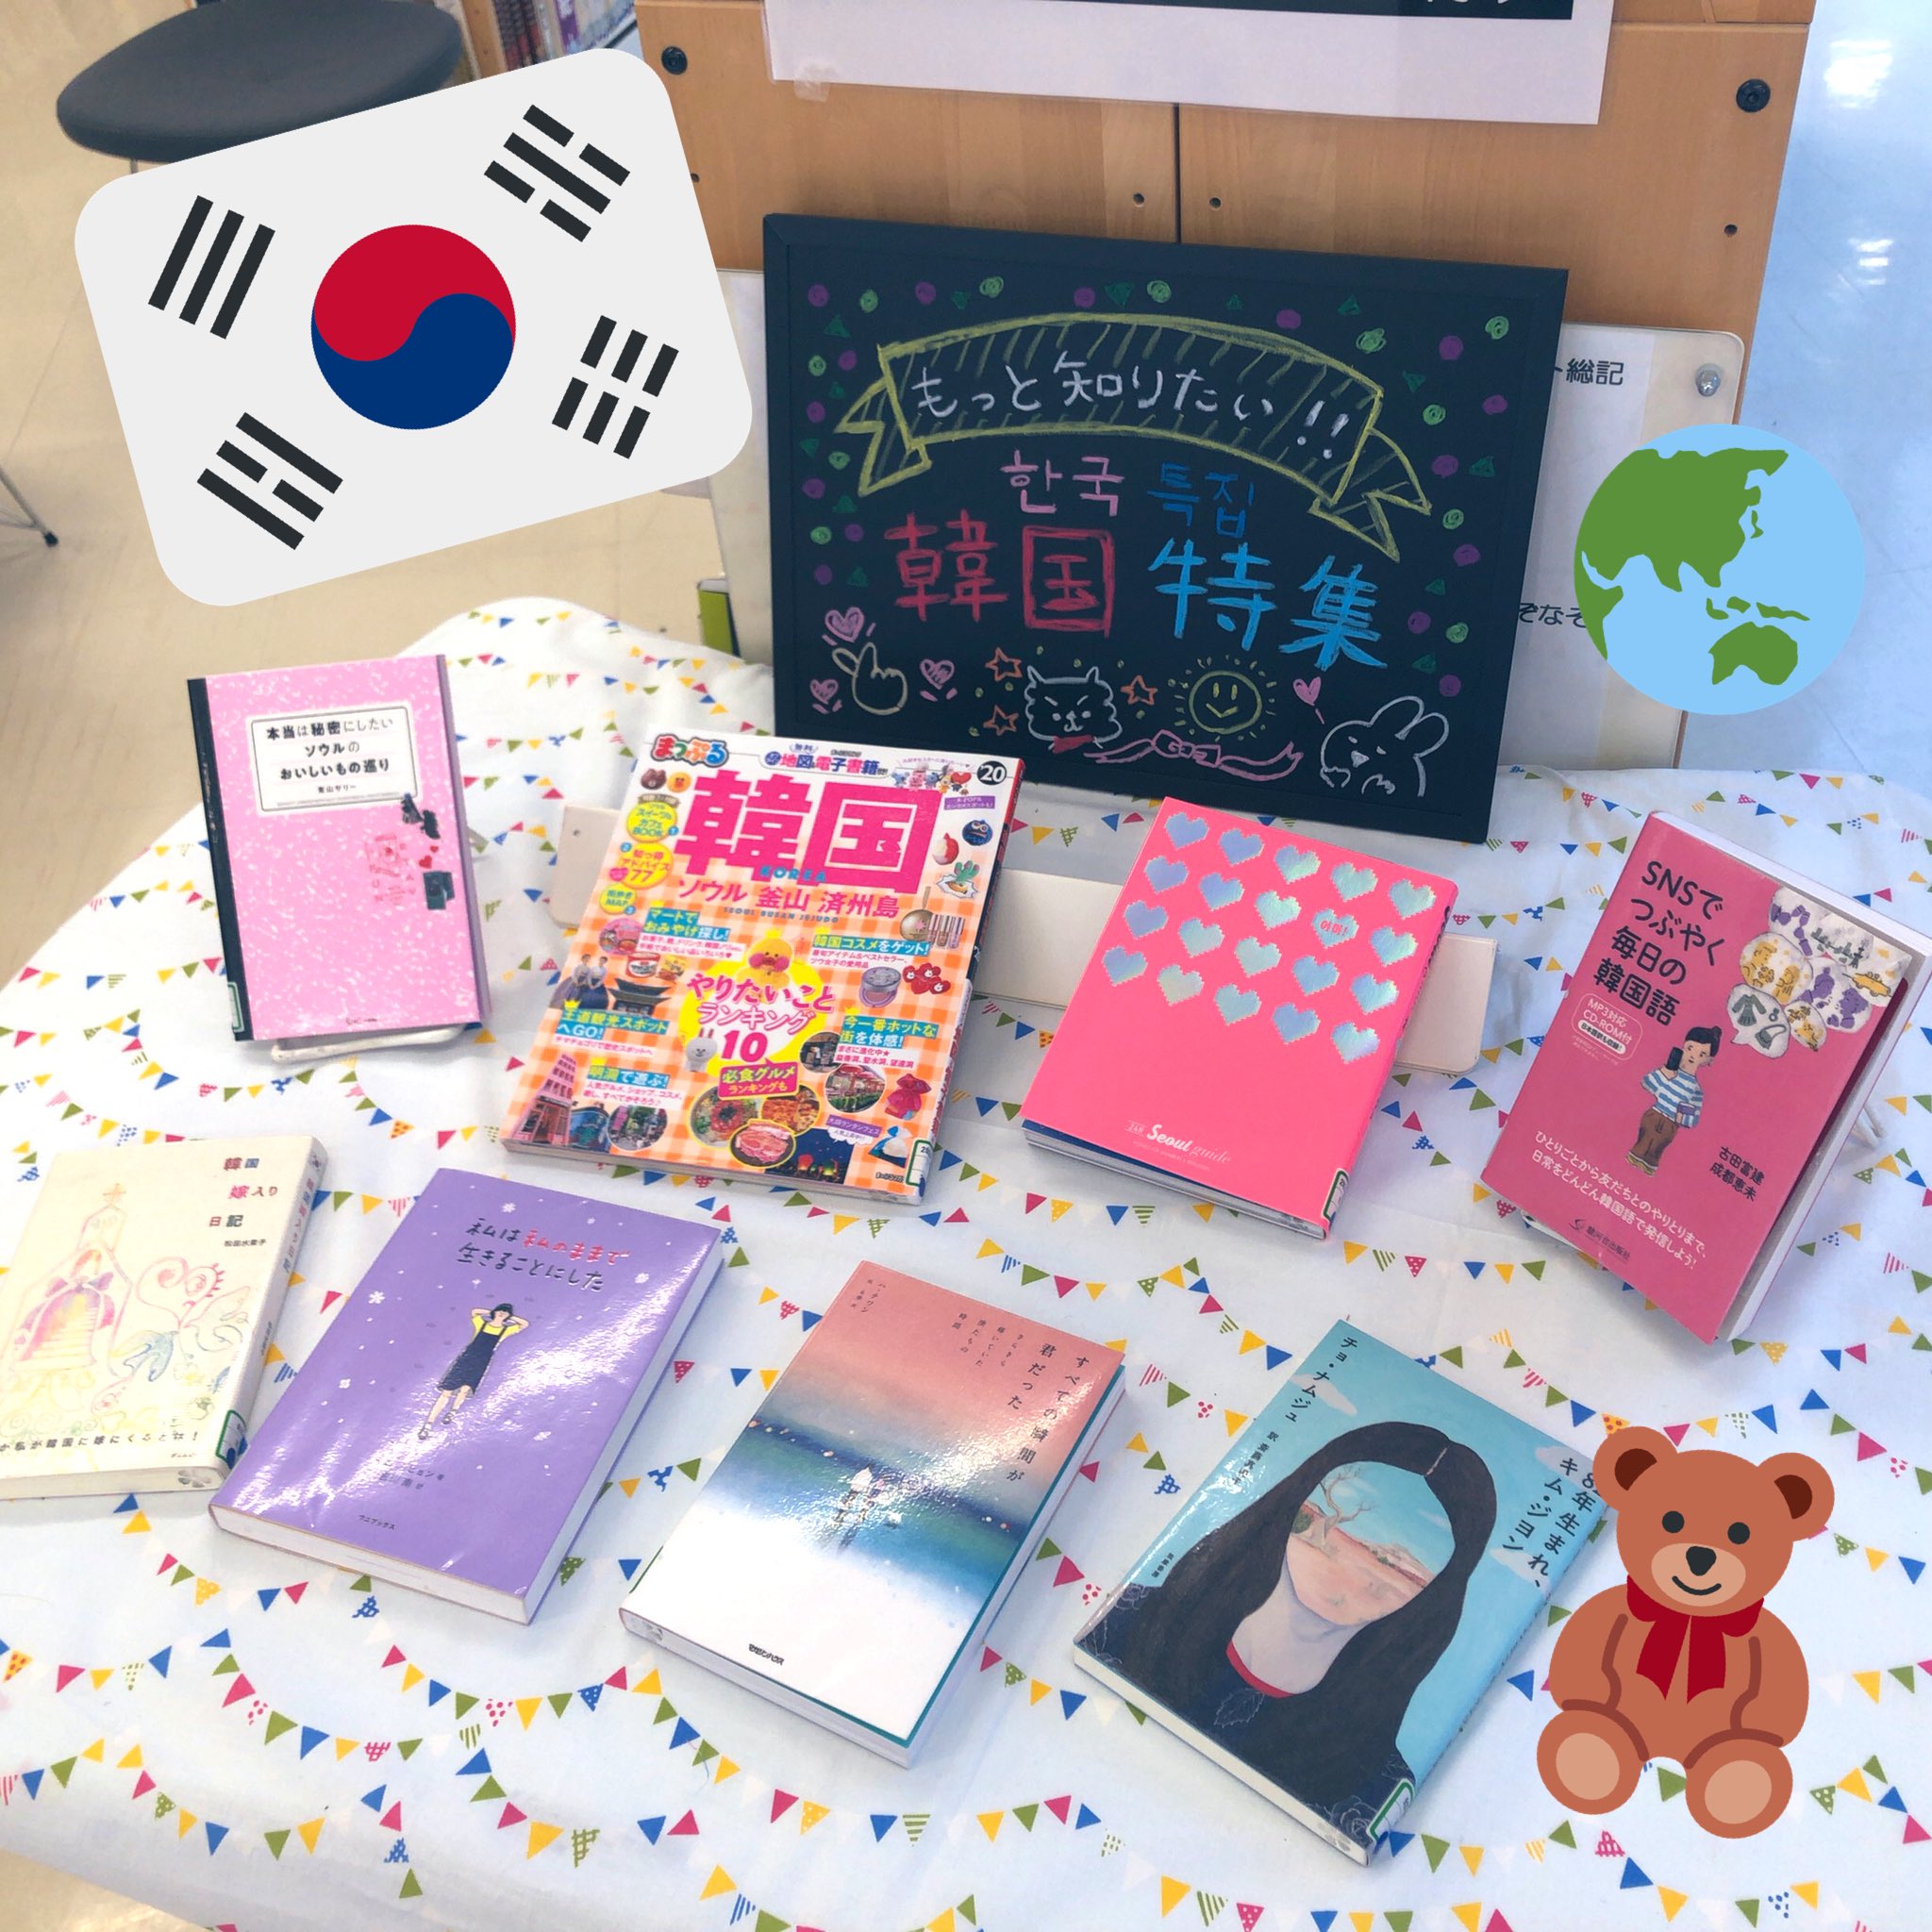 淑徳sc 図書室 韓国特集 アイドル ドラマ コスメ 雑貨などなど 韓国が好きな生徒が多いので コーナーを作りました 本の表紙もとっても可愛い韓国本 淑徳sc 図書室 図書館 学校図書館 韓国 韓流 Kpop アイドル 韓国